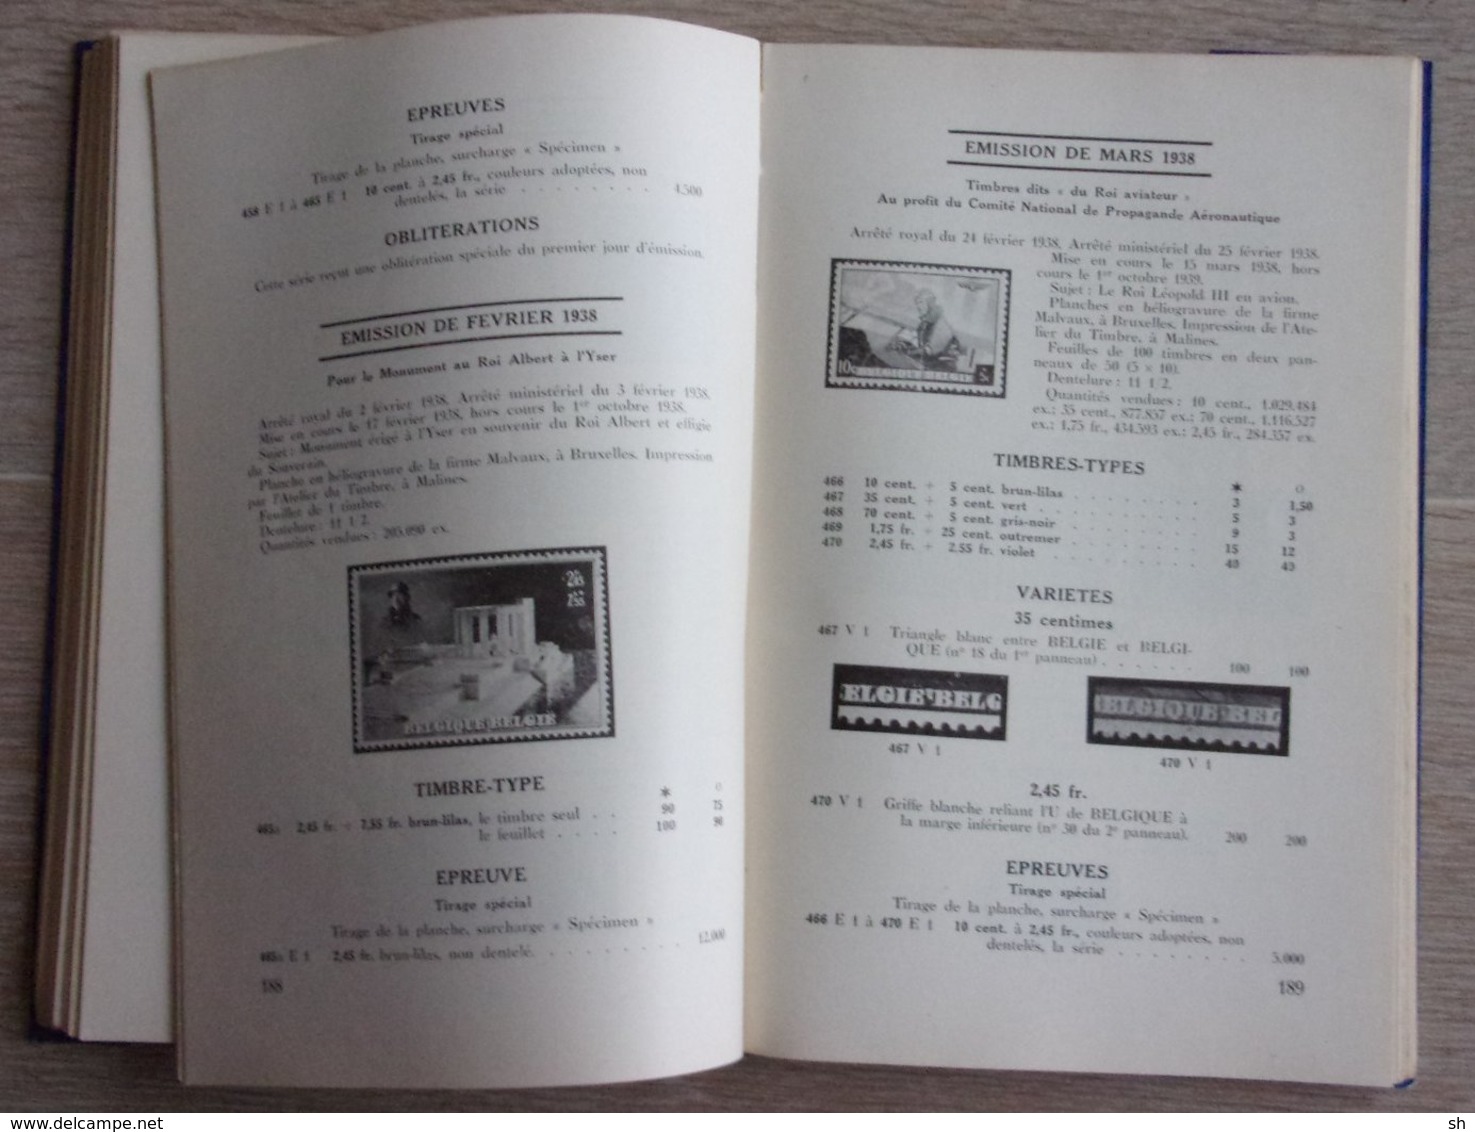 Catalogue Willy Balasse Belgique Congo Belge 1949 Tomes 1, 2 et 3 - Rare et cher Zeldzaam en duur - Variétés Varieteiten